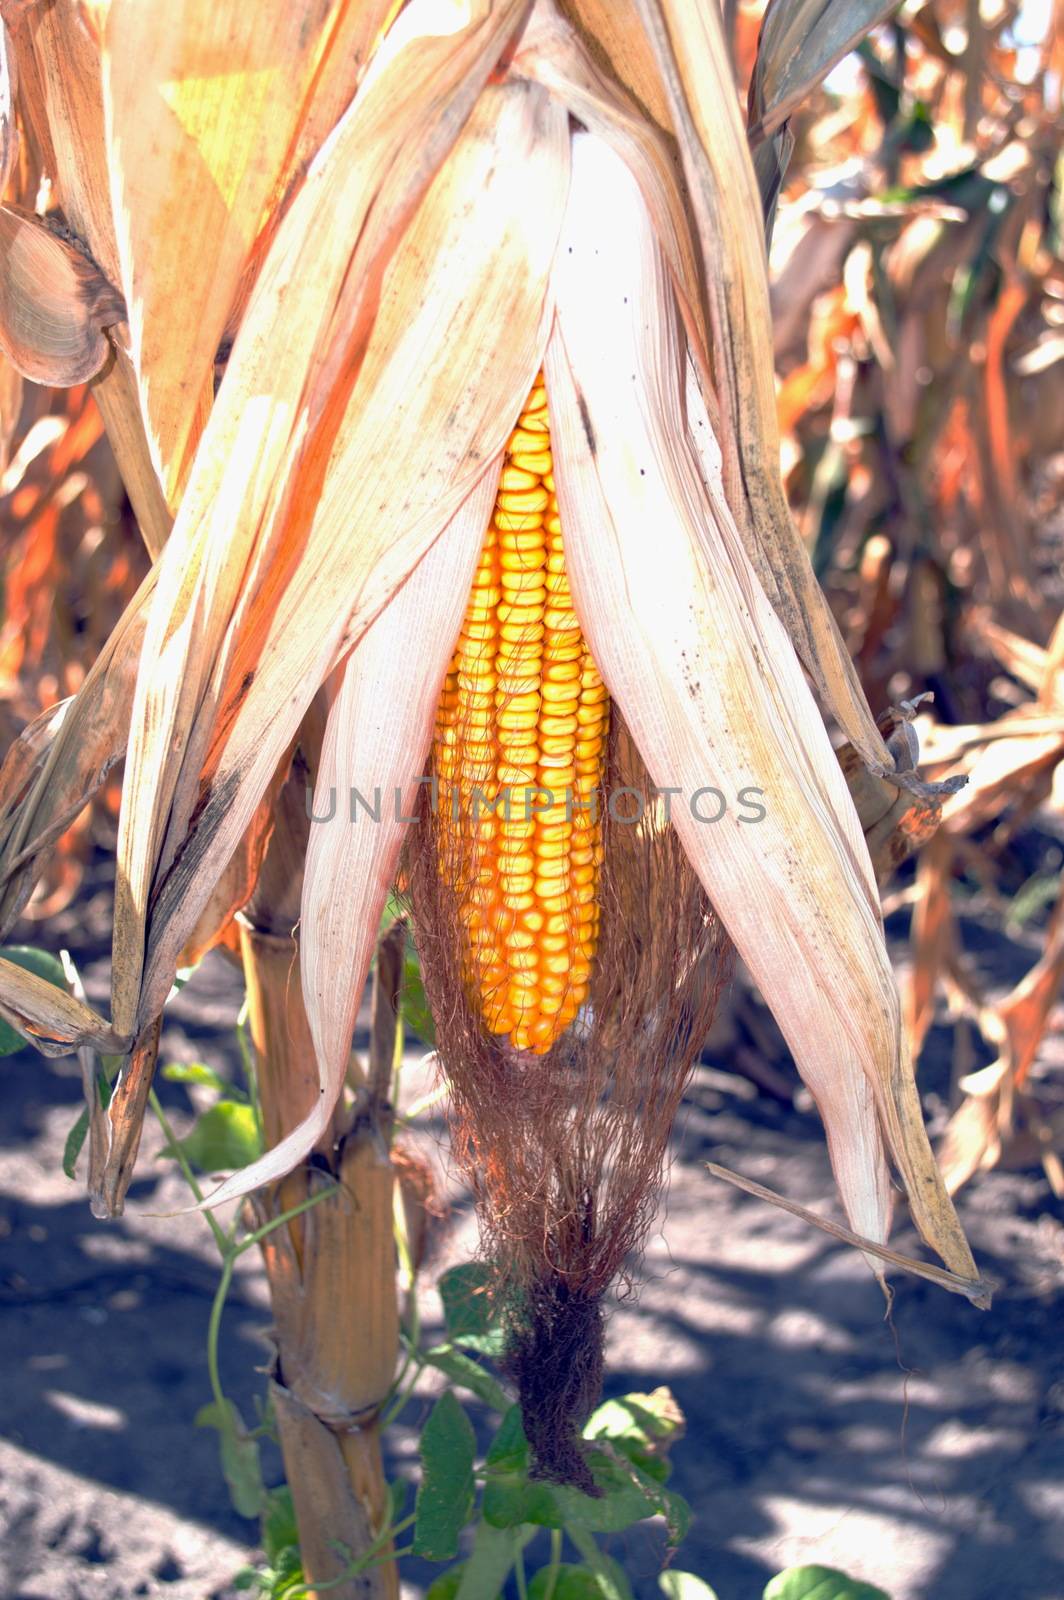 Dried ripe ear of corn growing in the field